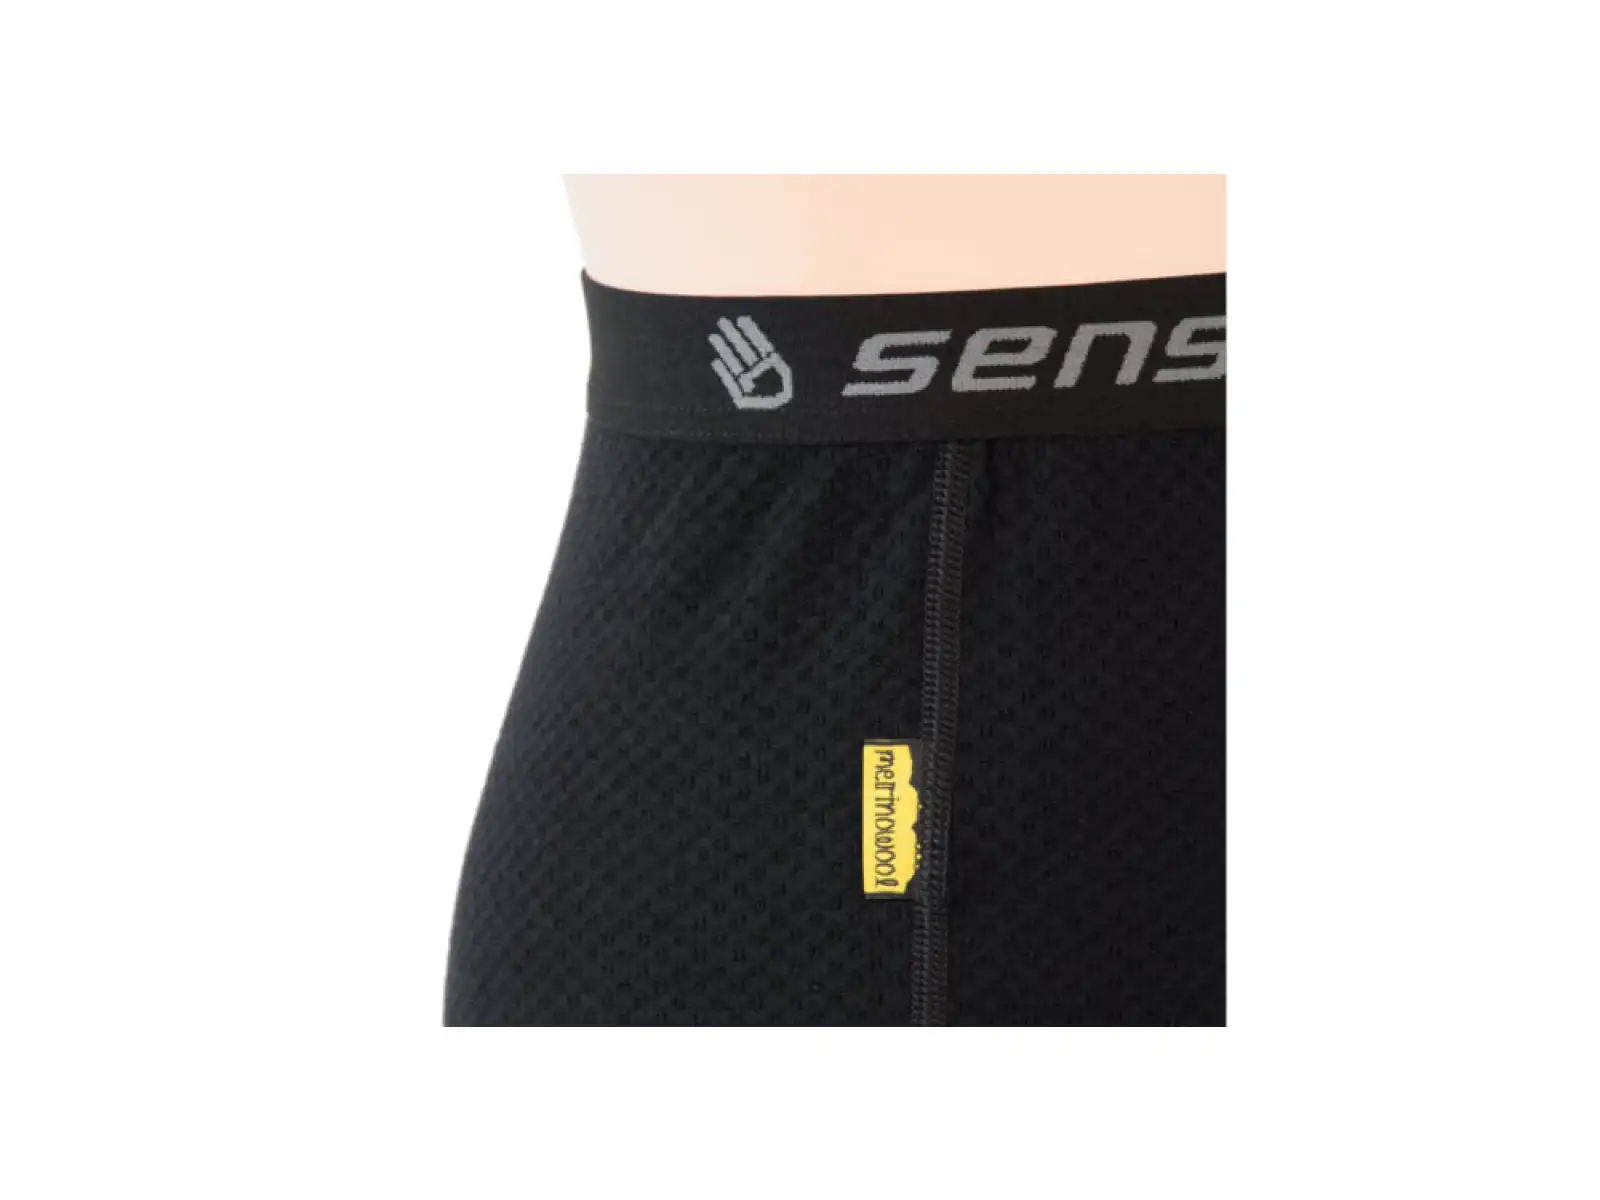 Sensor Merino DF dětské spodní prádlo černá